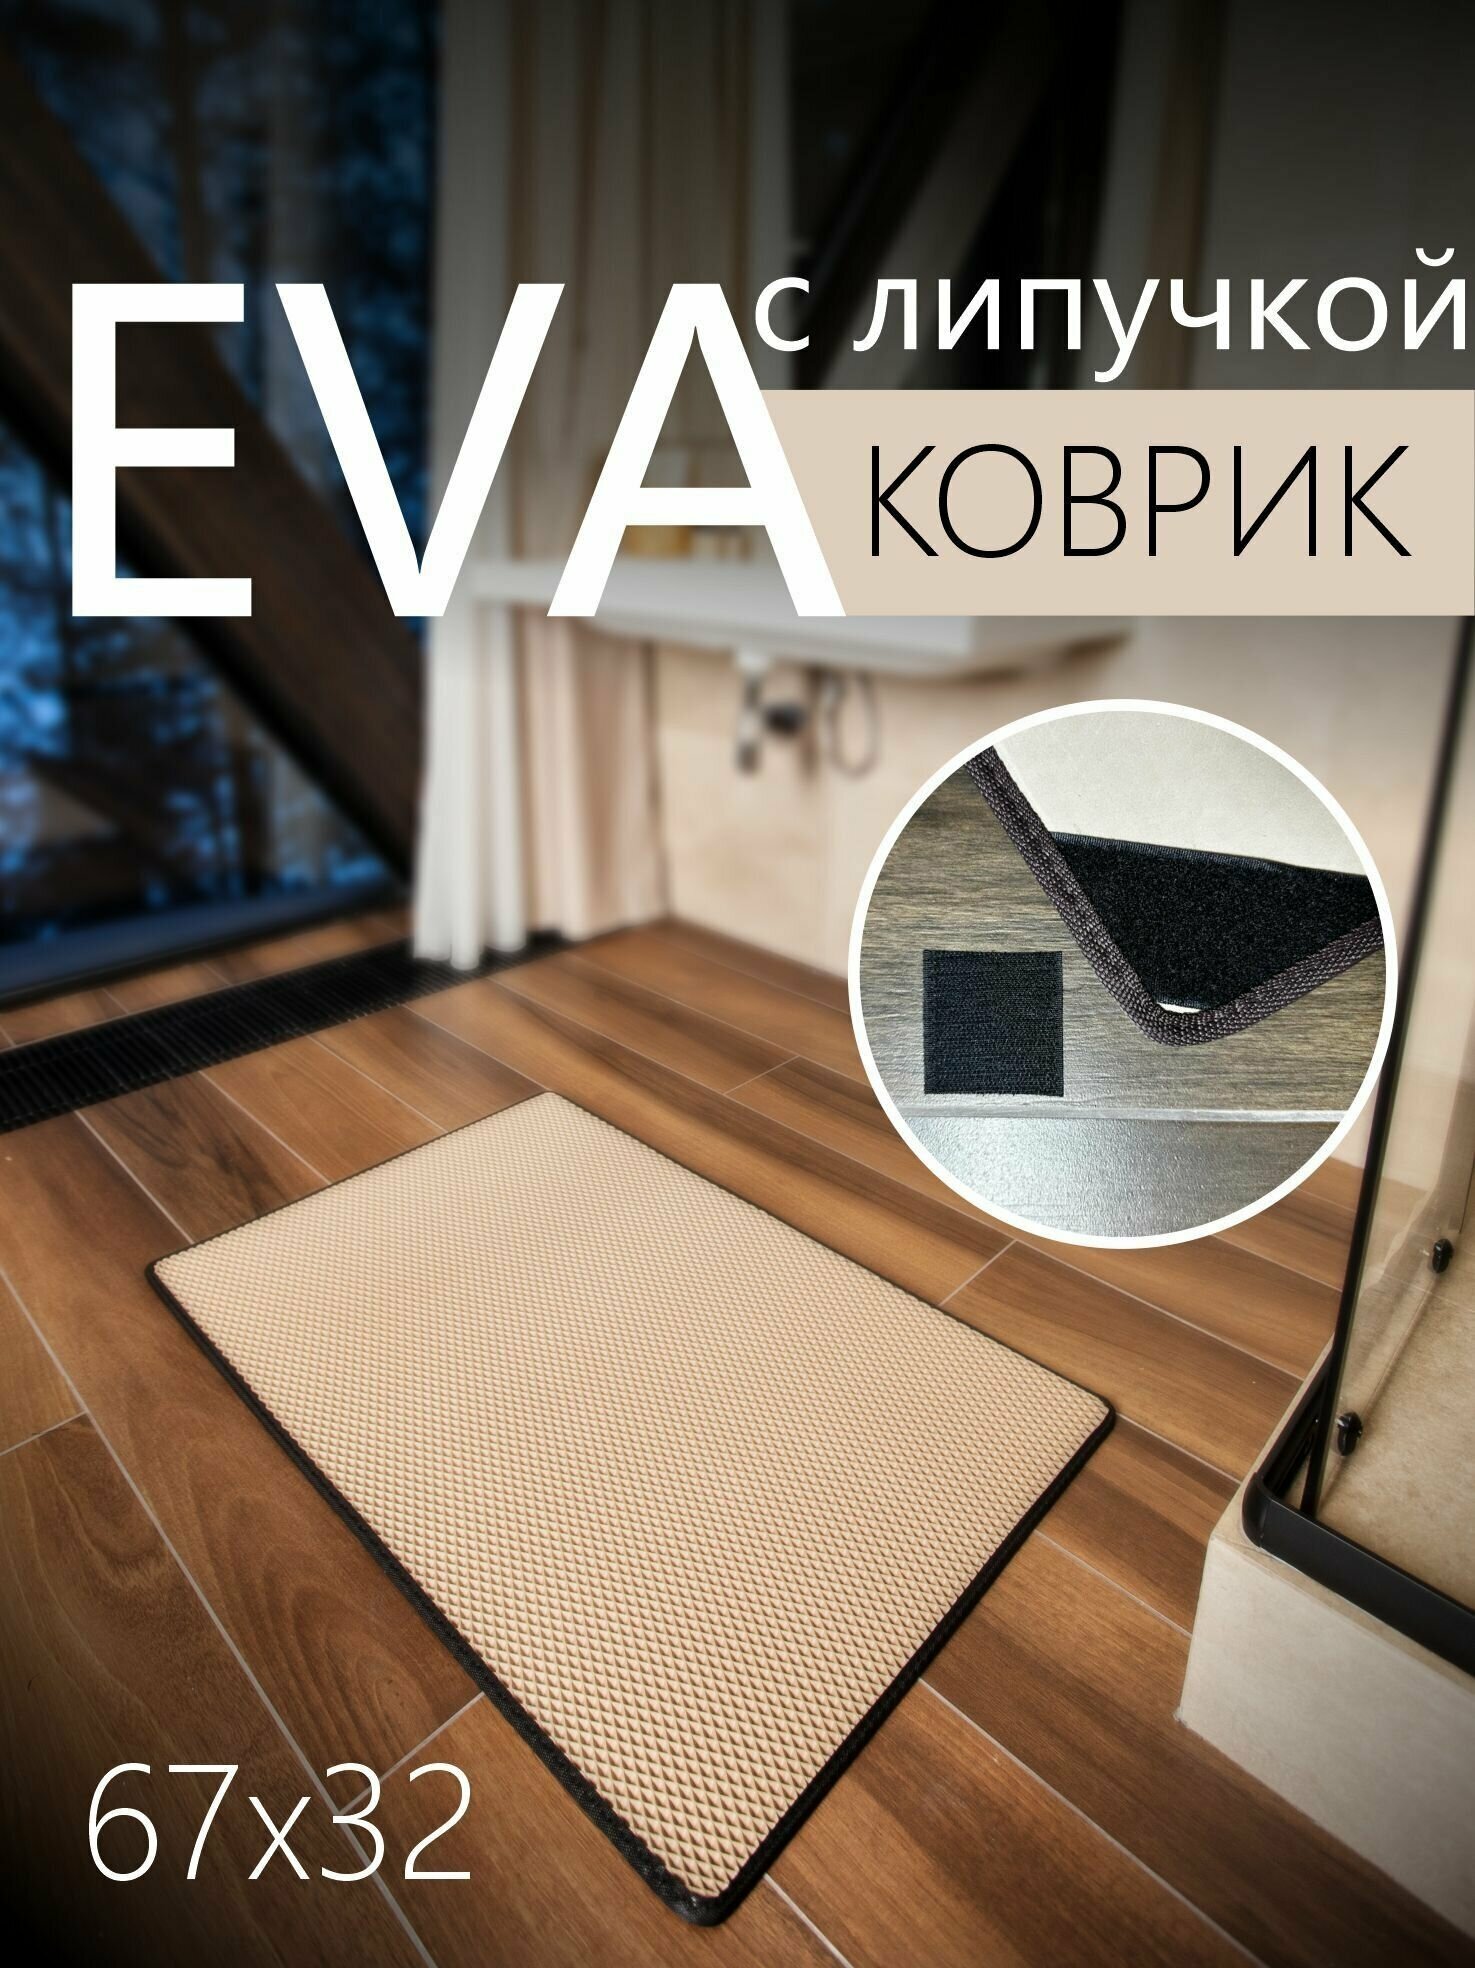 Коврик придверный противоскользящий EVA ЭВА универсальный 67х32 сантиметра. Липучки для фиксации. Ромб Бежевый с черной окантовкой